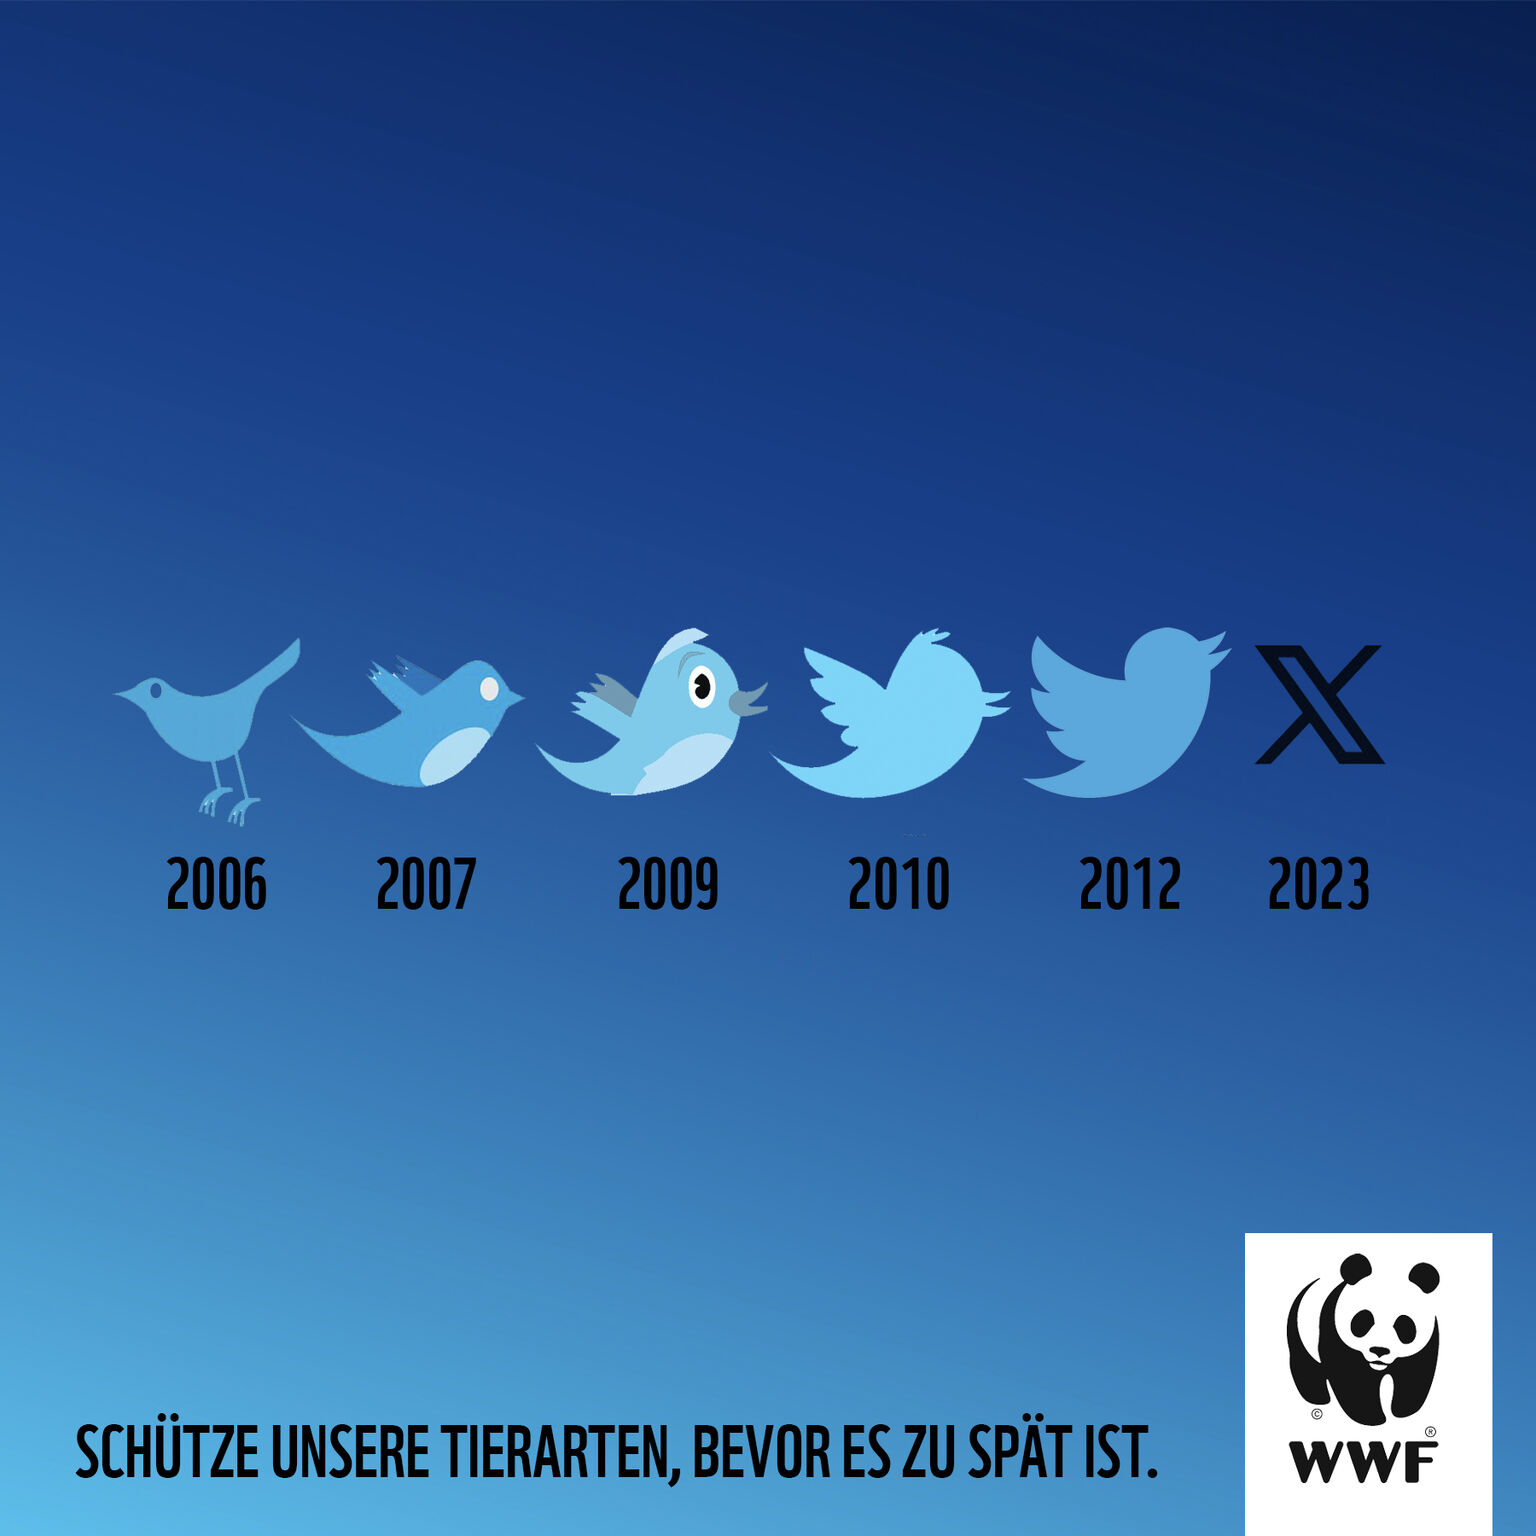 Ação da WWF usa extinção do pássaro azul do Twitter